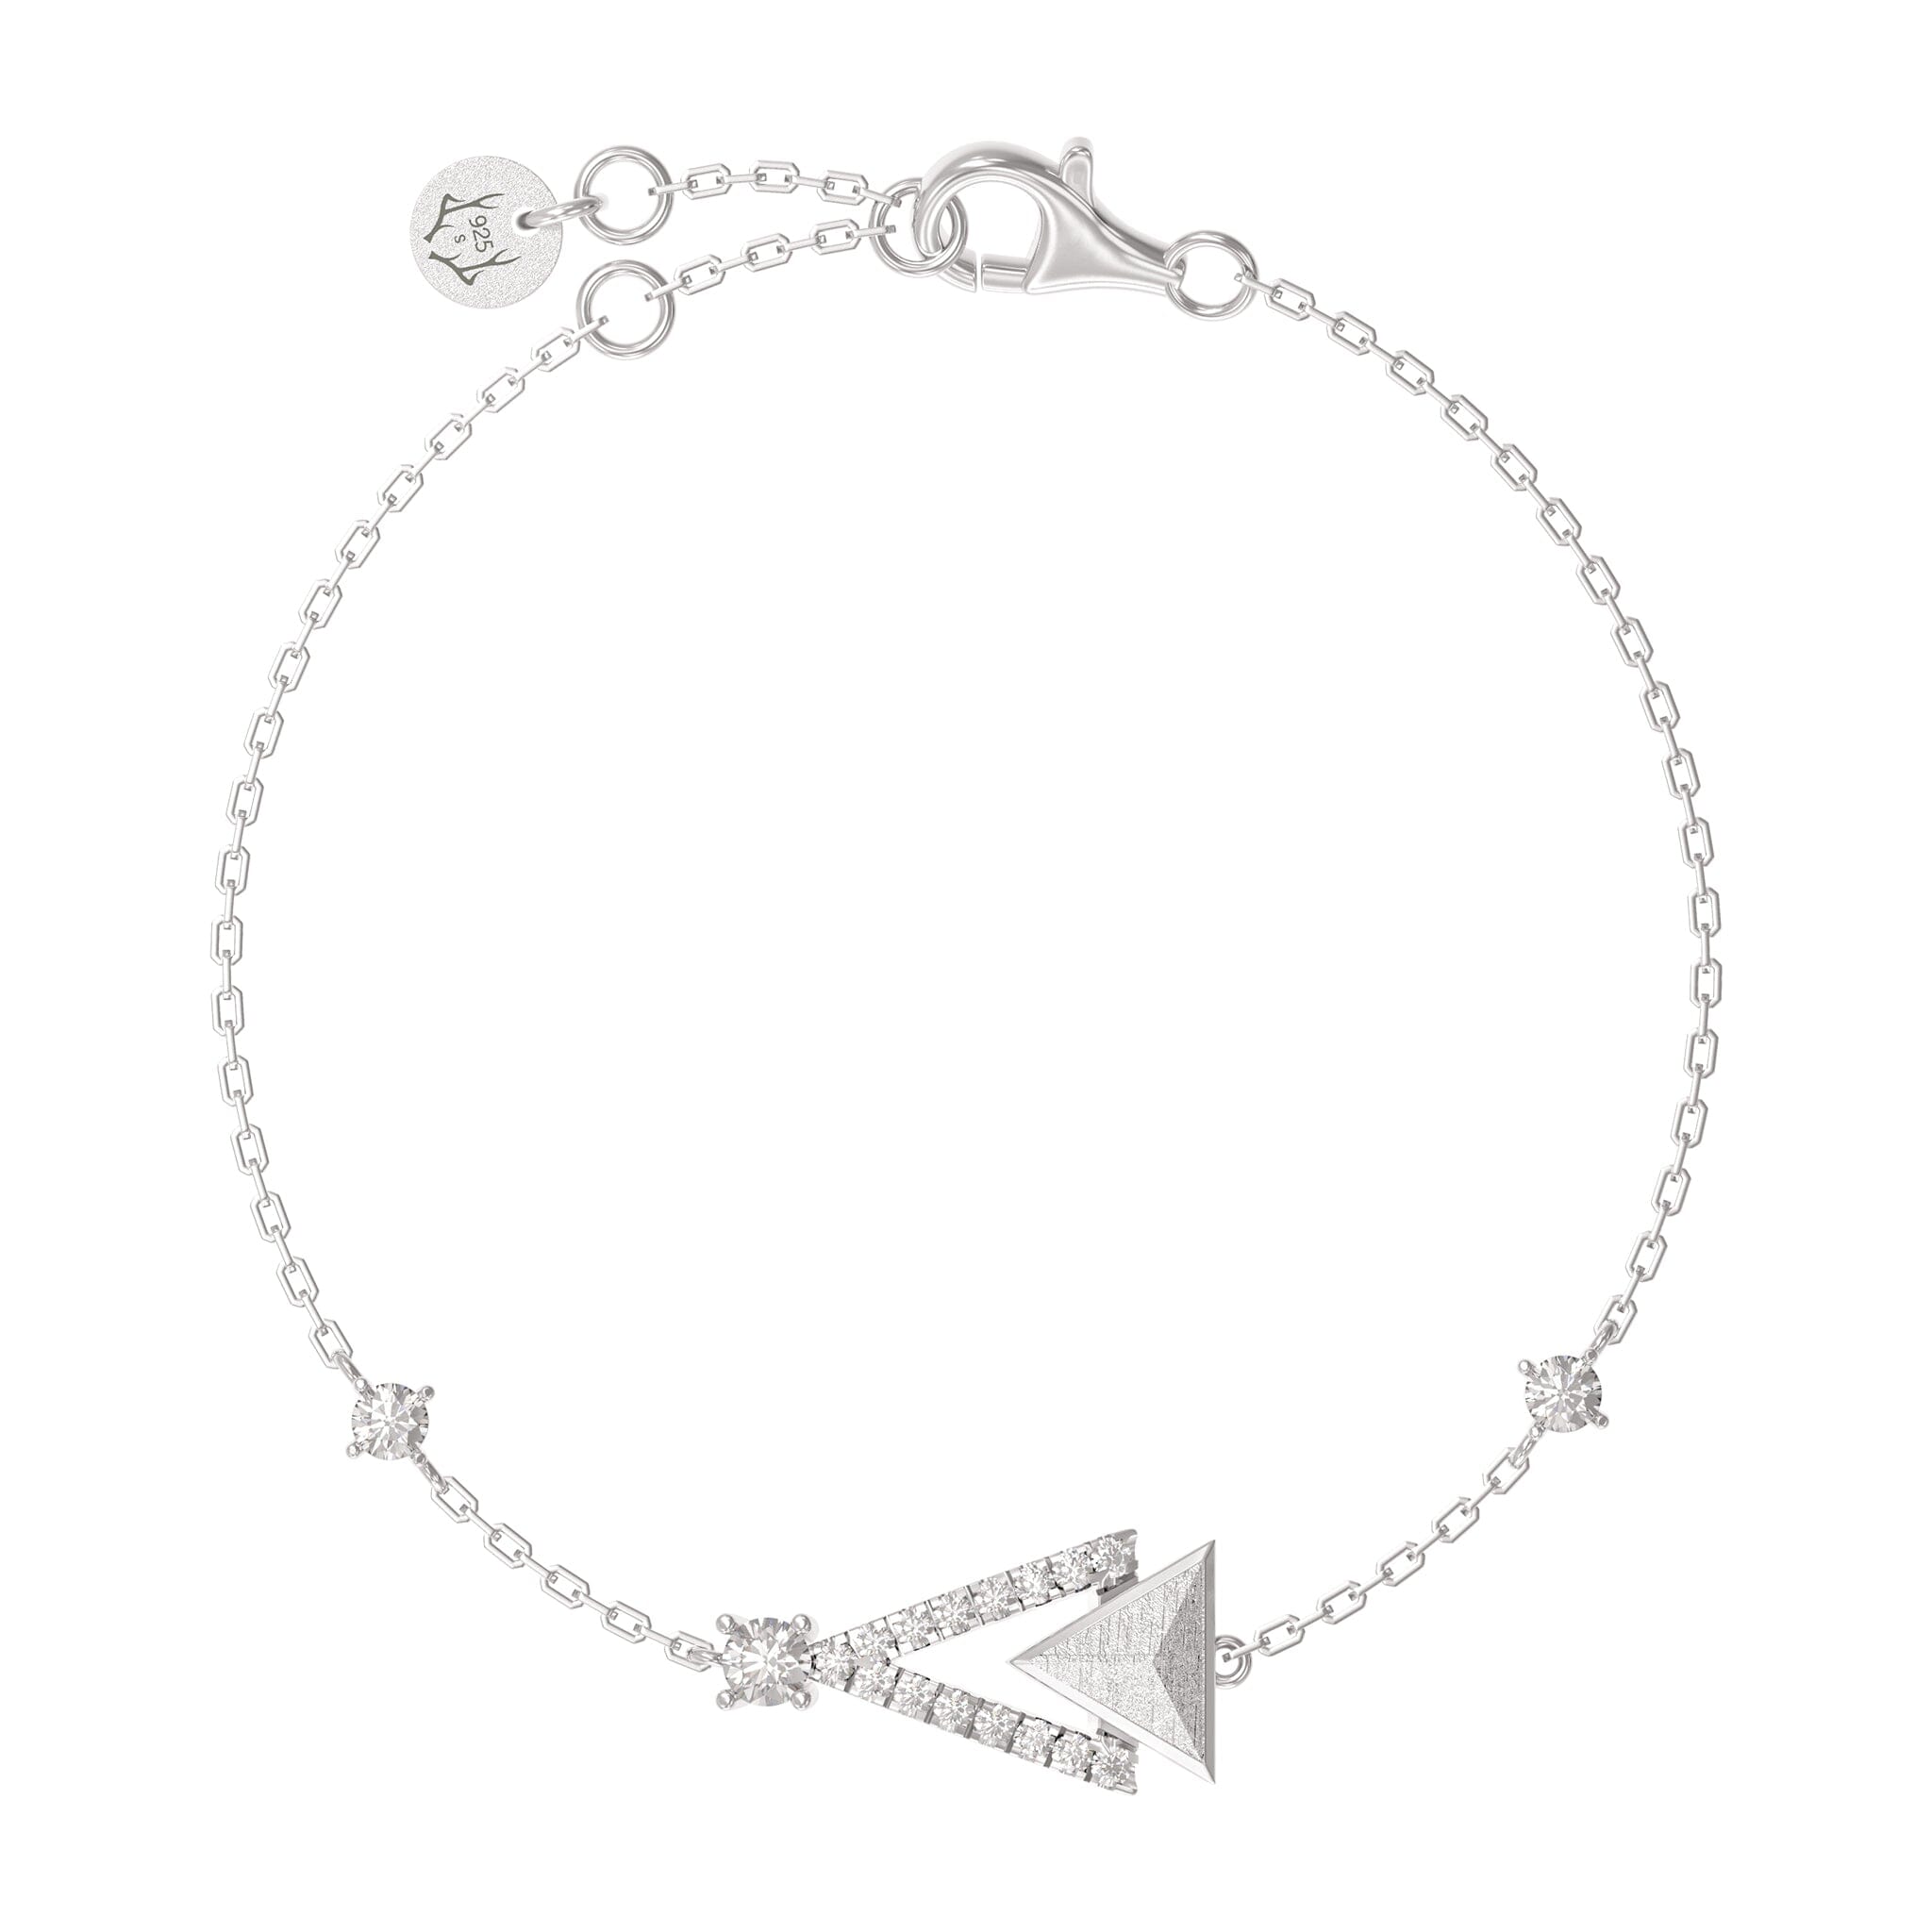 Women's Silver Bracelet with Triangle Meteorite Charm Bracelets WAA FASHION GROUP 